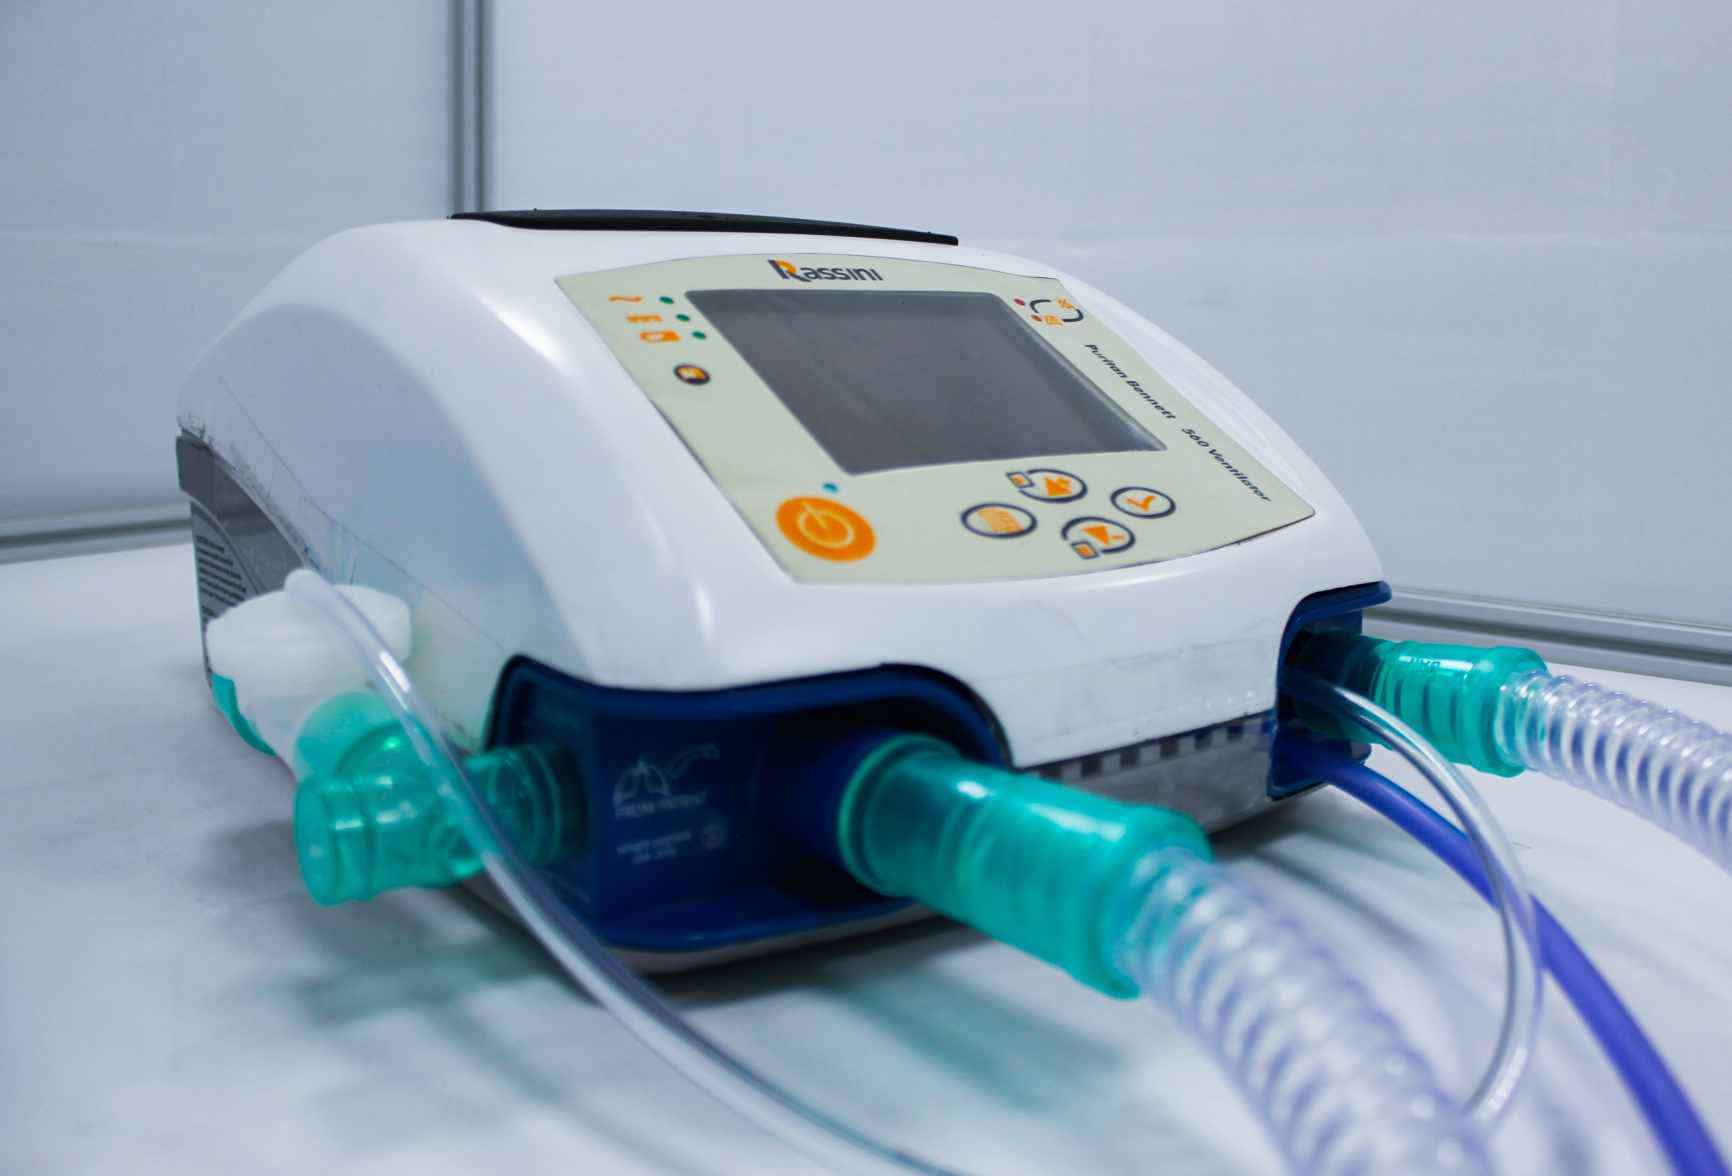 Egresados UDLAP contribuyeron al desarrollo de un ventilador para enfermedades respiratorias